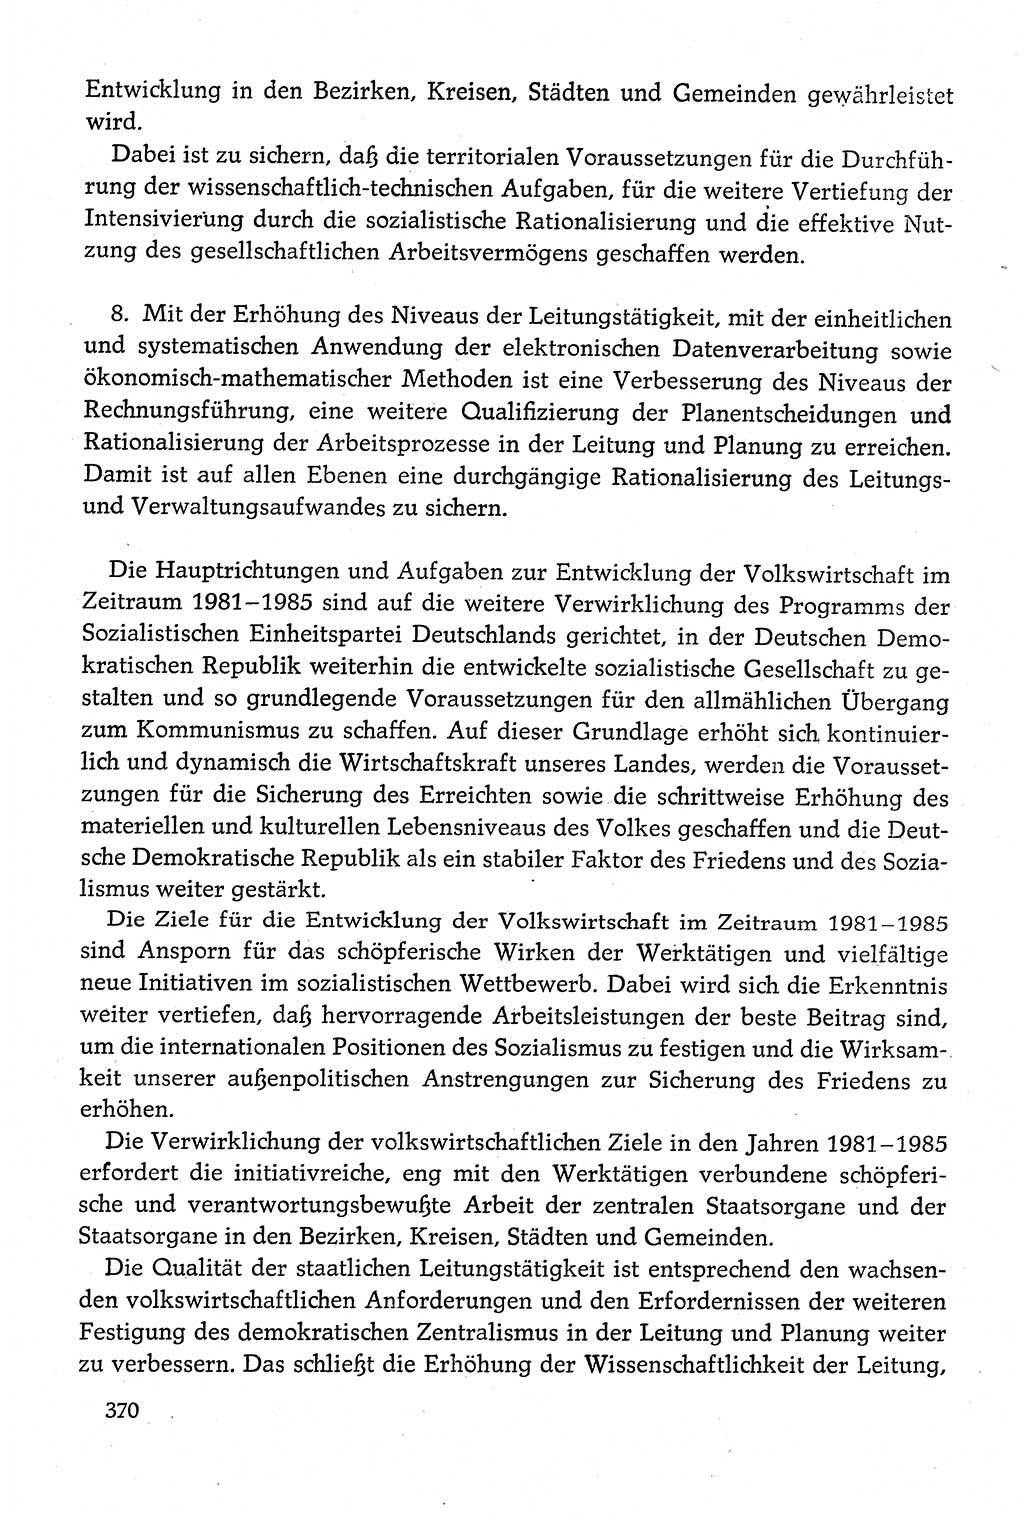 Dokumente der Sozialistischen Einheitspartei Deutschlands (SED) [Deutsche Demokratische Republik (DDR)] 1980-1981, Seite 370 (Dok. SED DDR 1980-1981, S. 370)